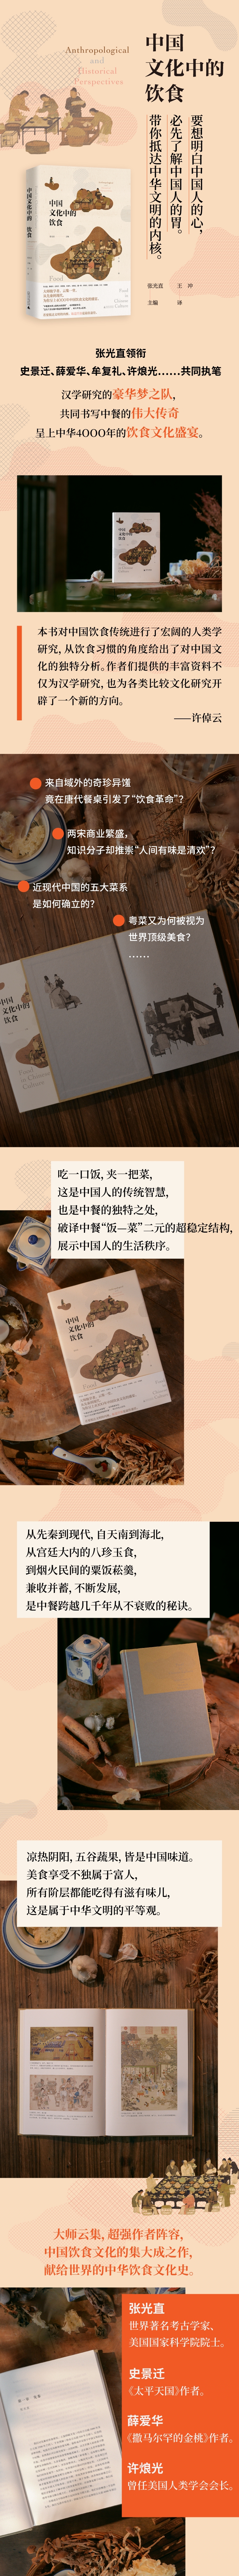 中国文化中的饮食 张光直，薛爱华，史景迁 等 著 广西师范大学出版社